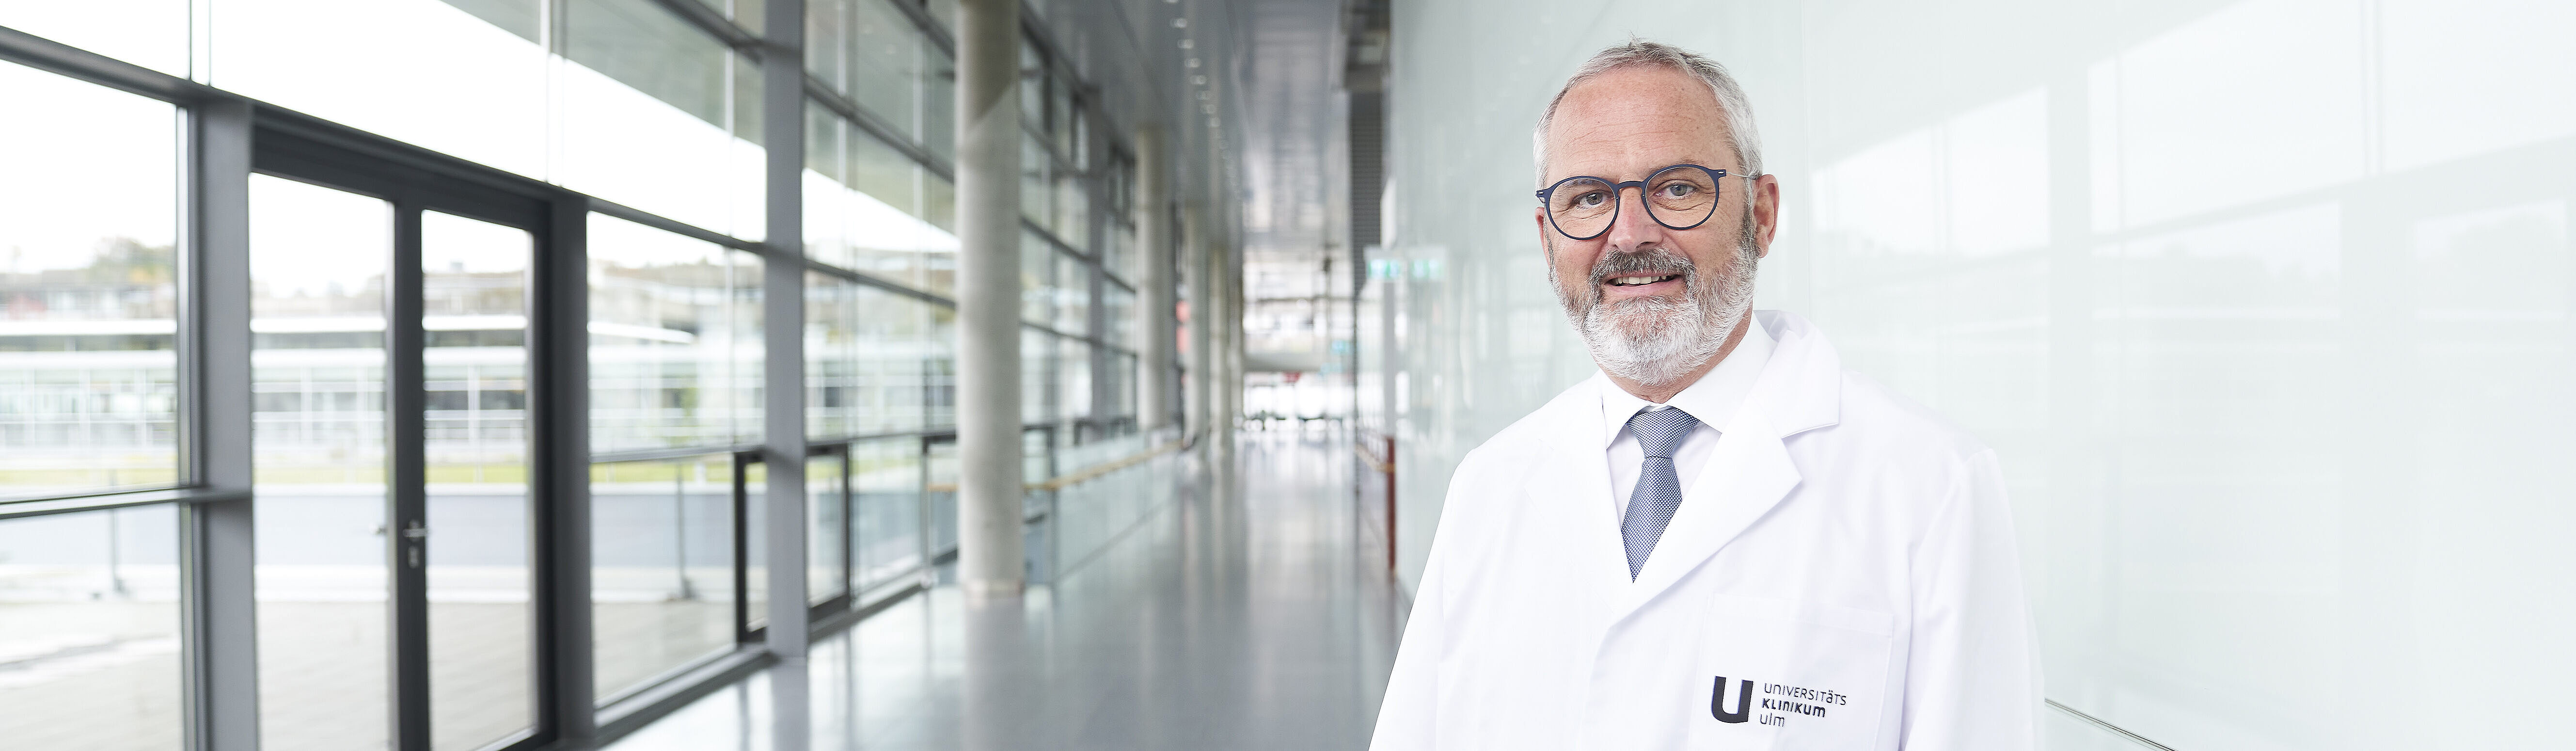 Prof. Florian Gebhard in medizinischer Berufsbekleidung auf einem langen Flur